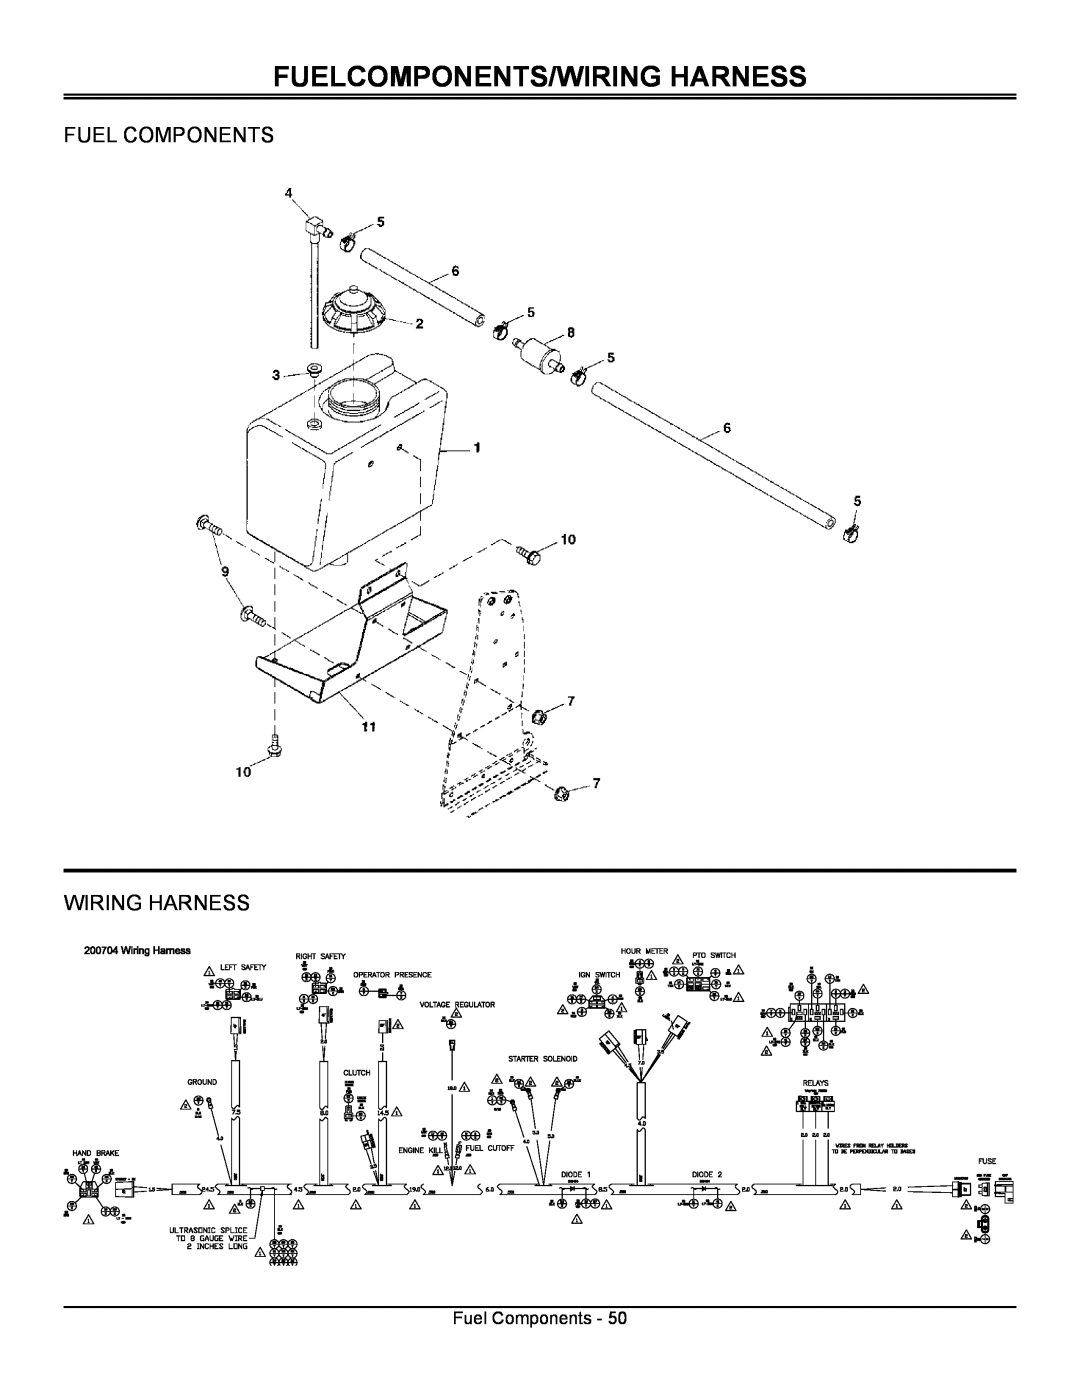 Great Dane GSRKA1952S, GSRKW2352S manual Fuelcomponents/Wiring Harness, Fuel Components Wiring Harness 